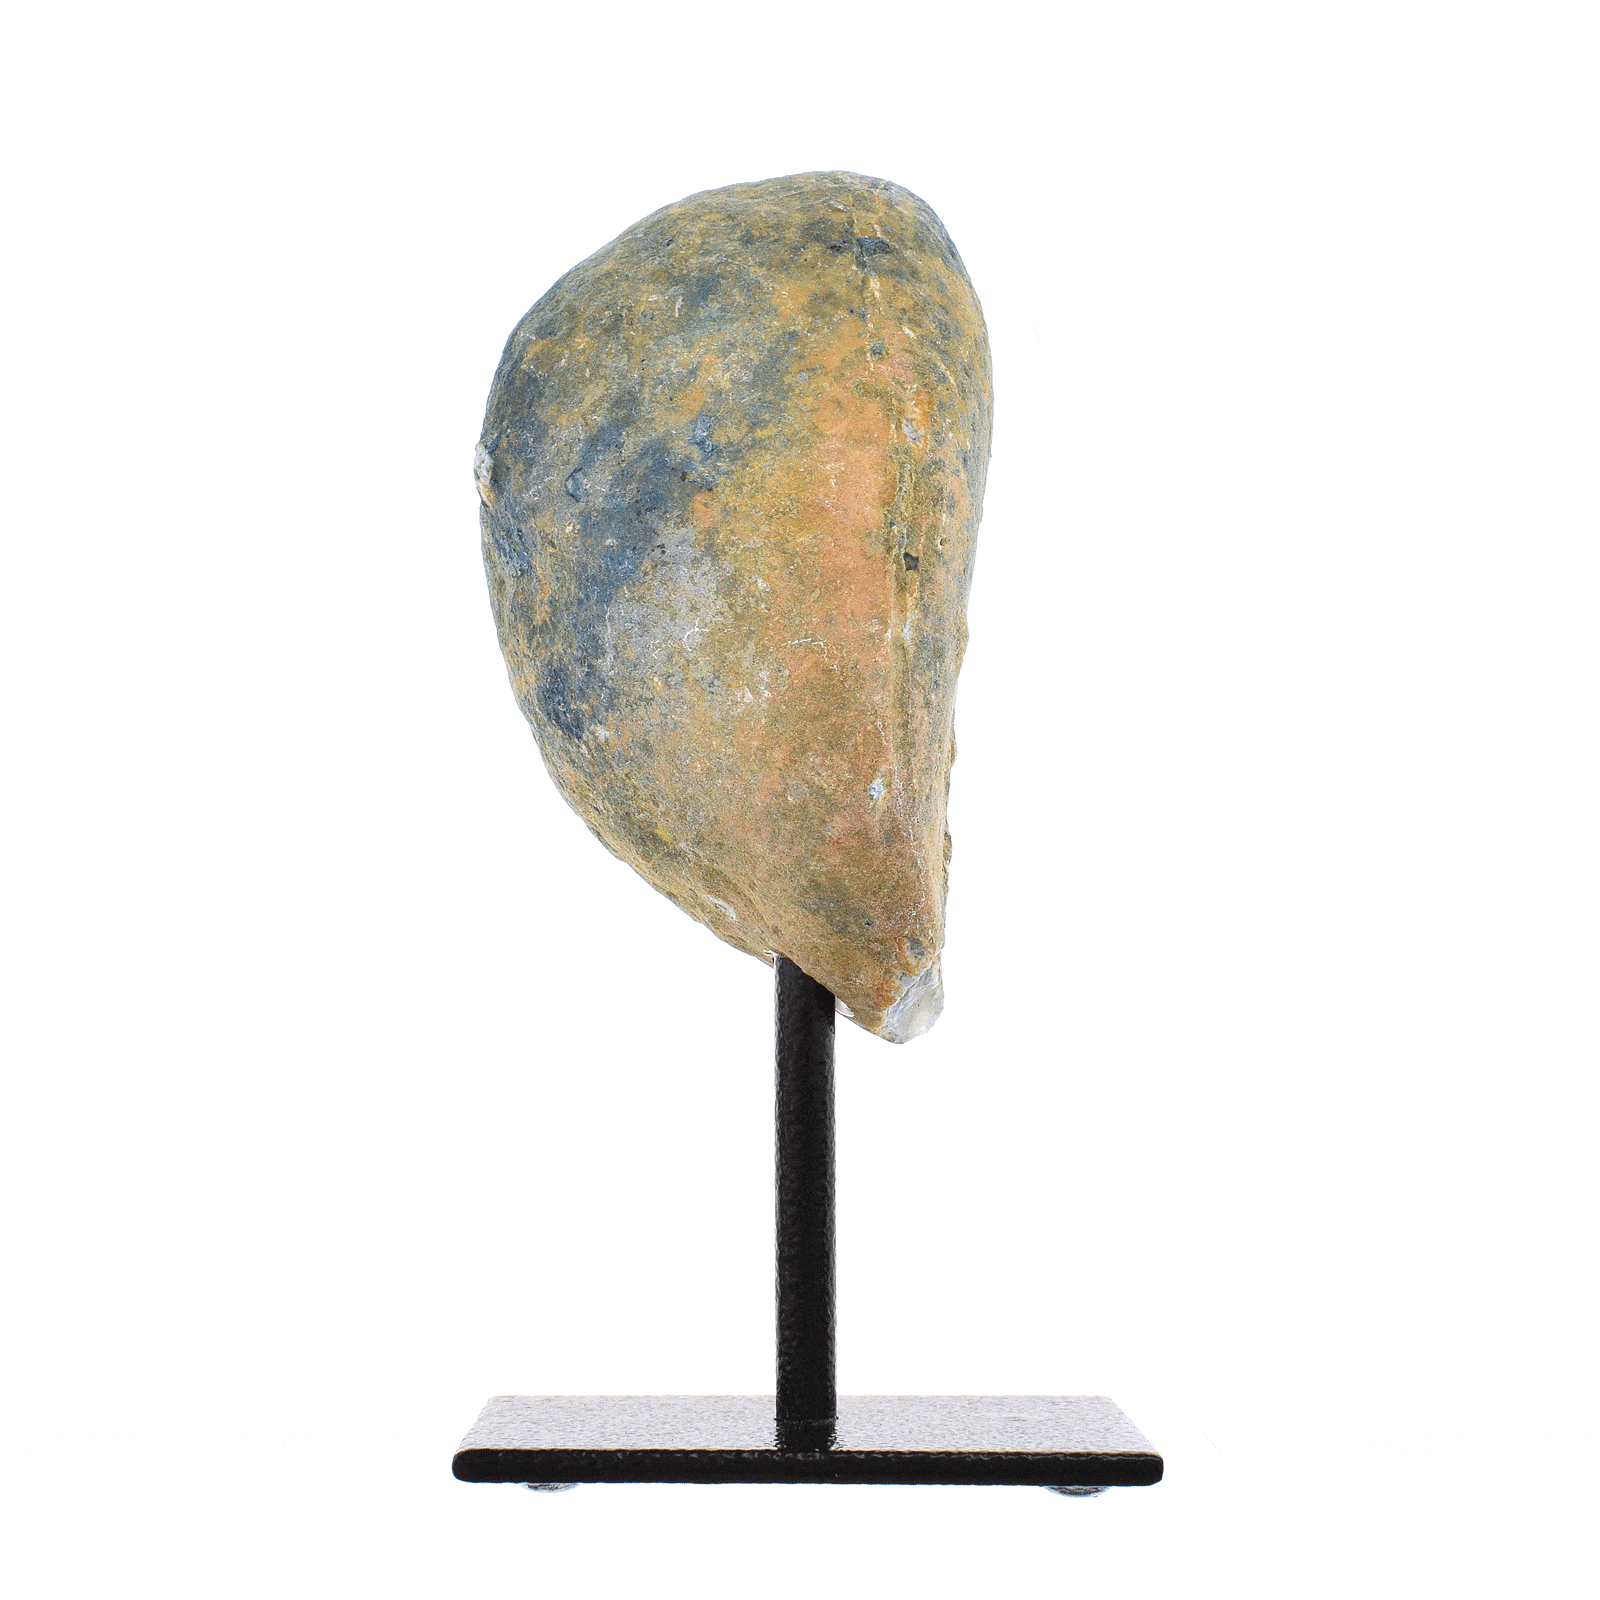 Γεώδες φυσικής πέτρας αχάτη με κρύσταλλα χαλαζία, βαμμένο σε μπλε χρώμα. Το γεώδες είναι ενσωματωμένο σε μαύρη μεταλλική βάση και το προϊόν έχει ύψος 13,5cm. Αγοράστε online shop.